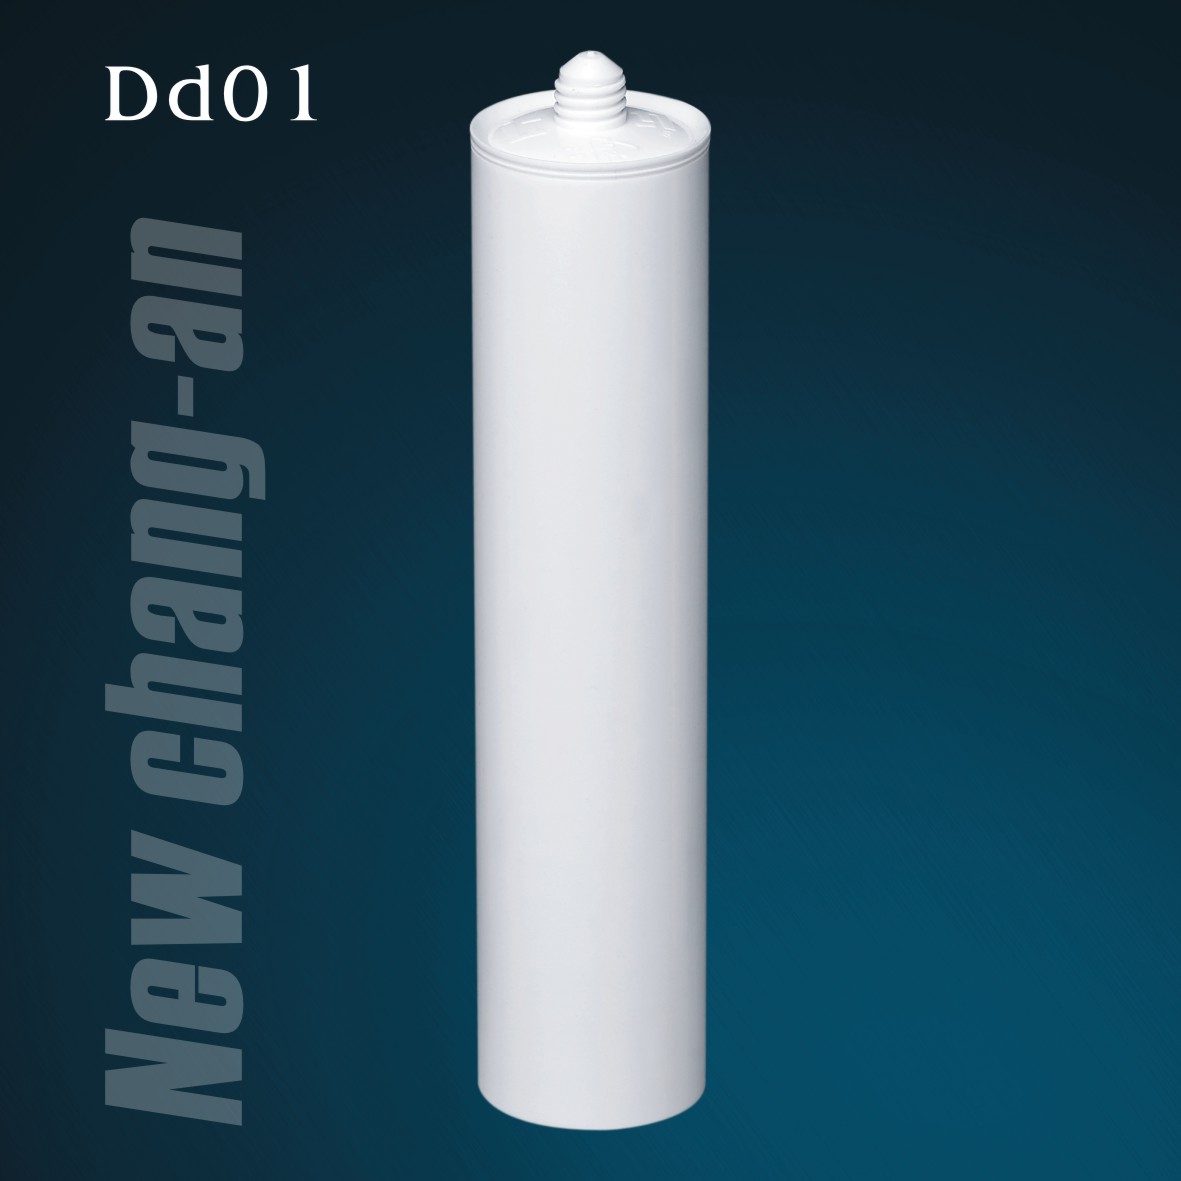 300 мл пустой пластиковый картридж HDPE для силиконового герметика Dd01